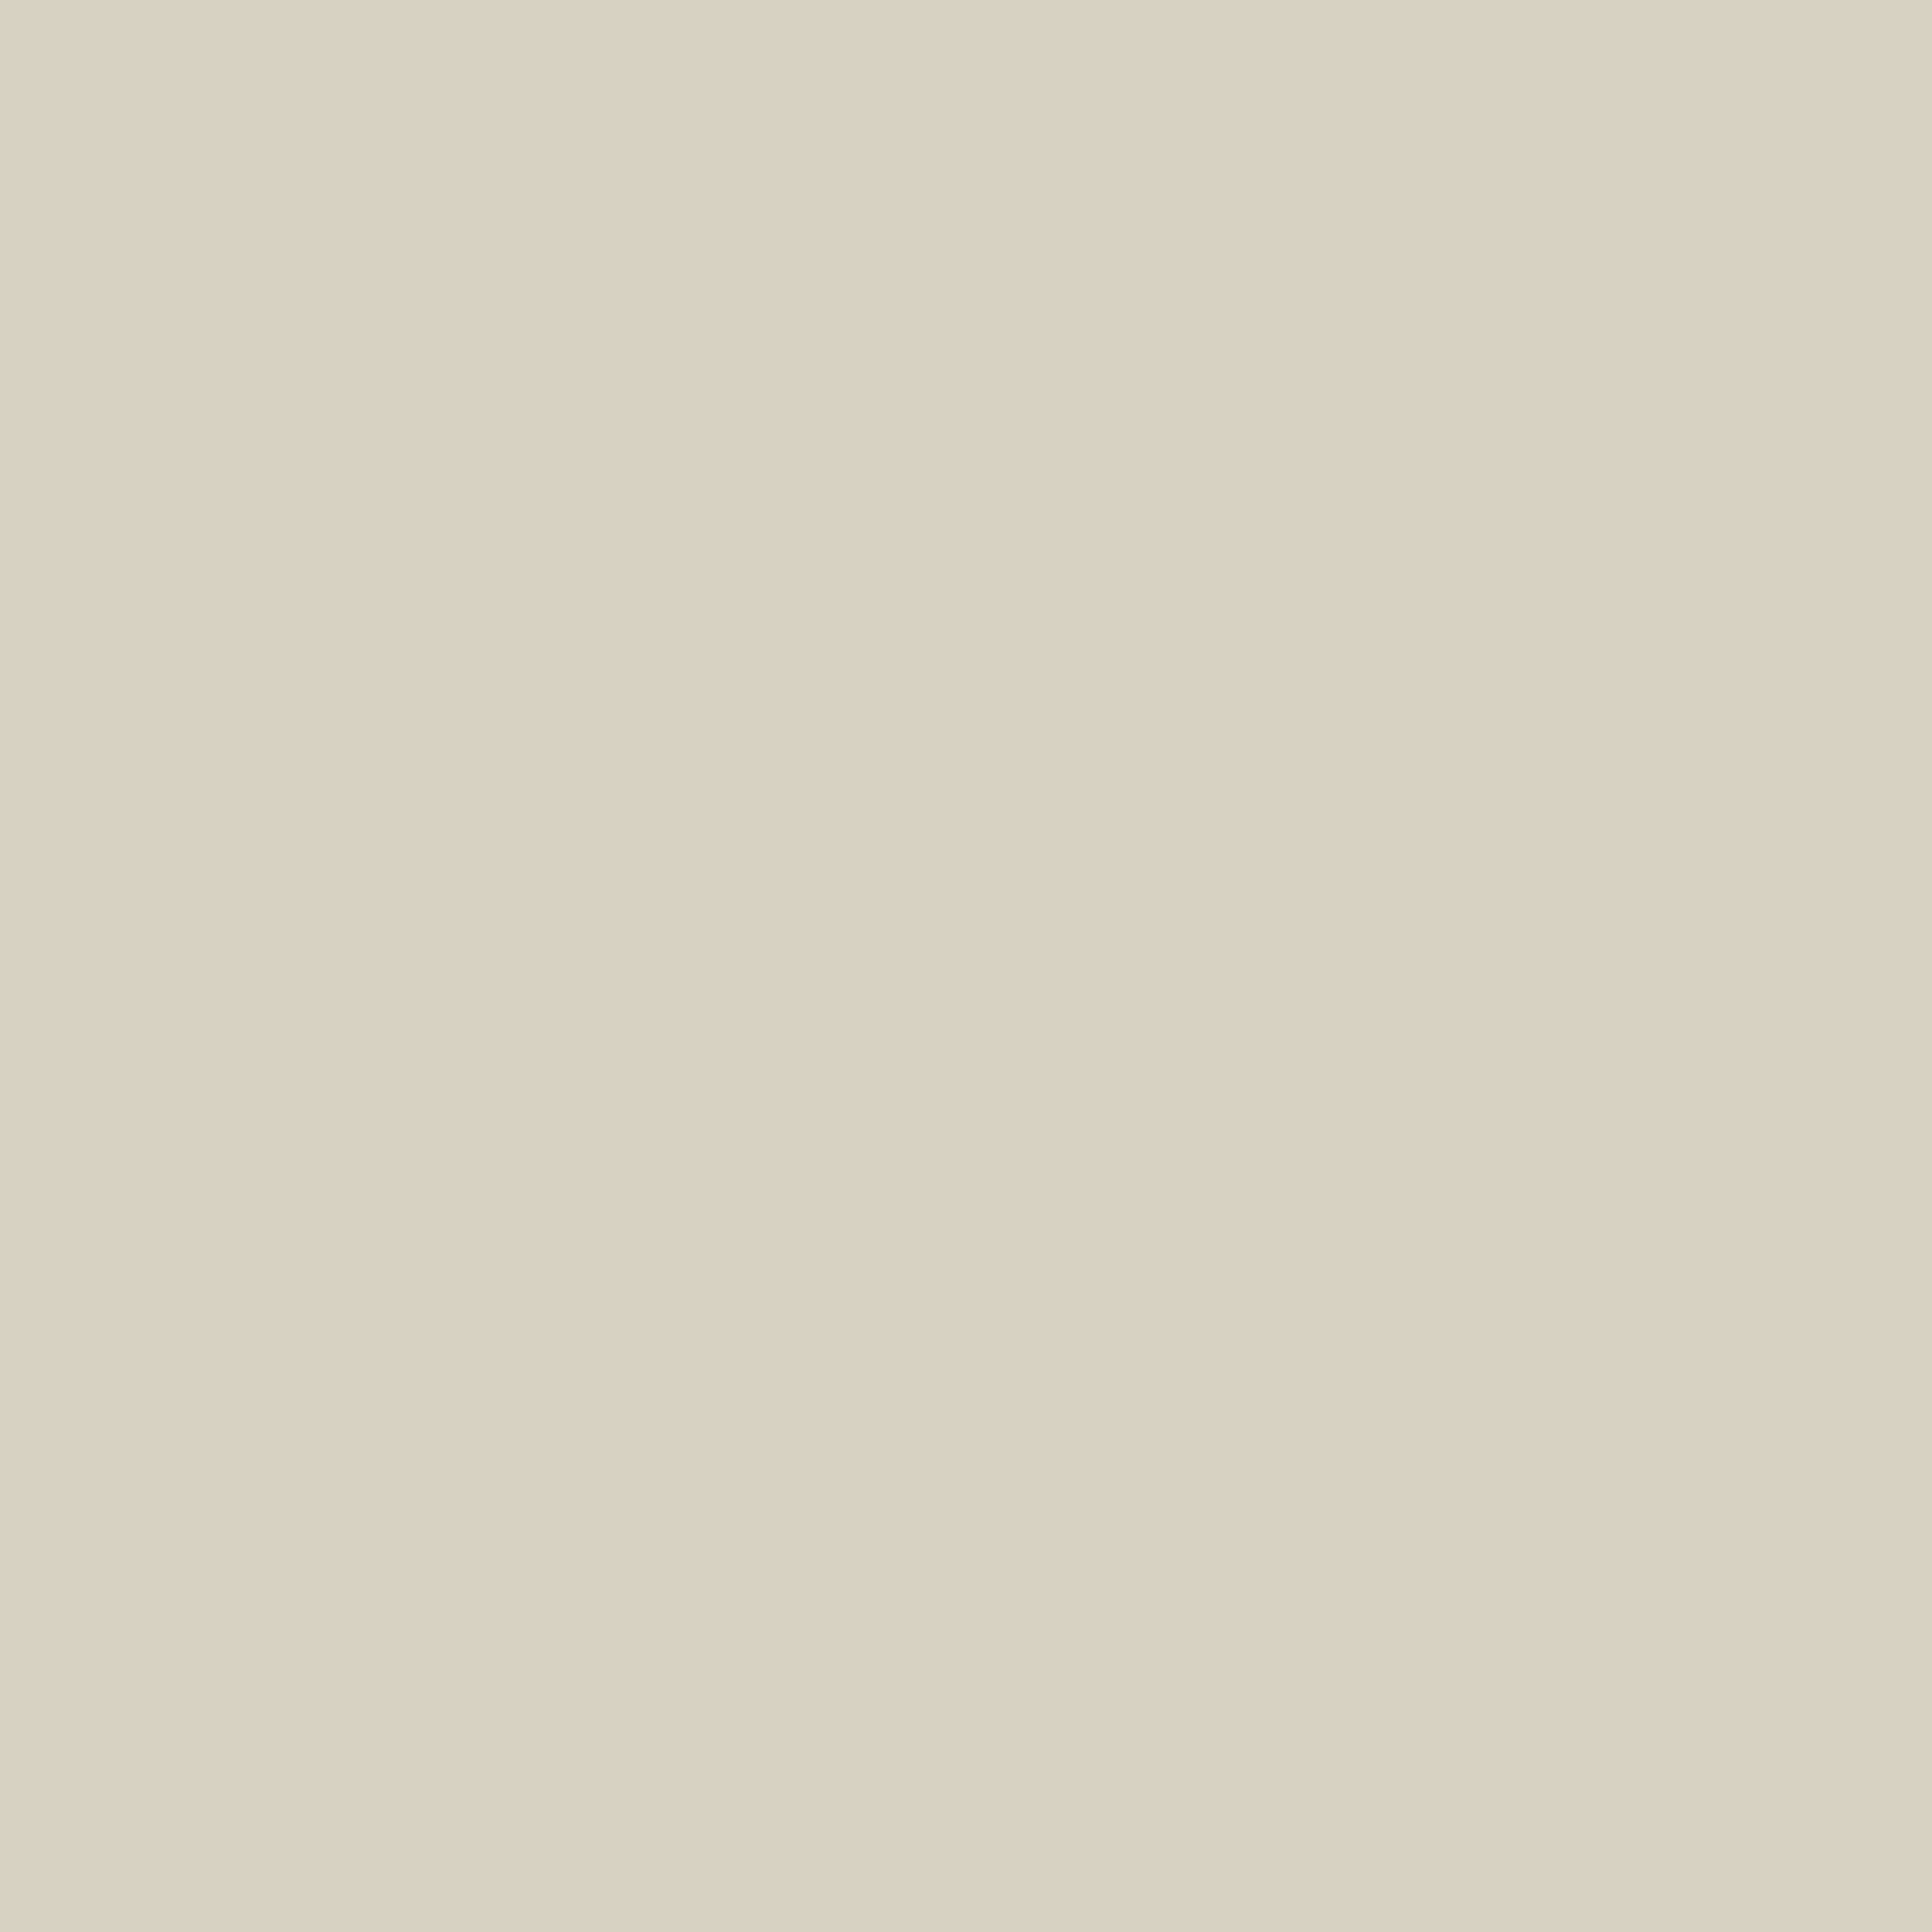 Казимир Малевич. Белое на белом (Белый квадрат). 1918. Нью-йоркский Музей современного искусства, Нью-Йорк, США